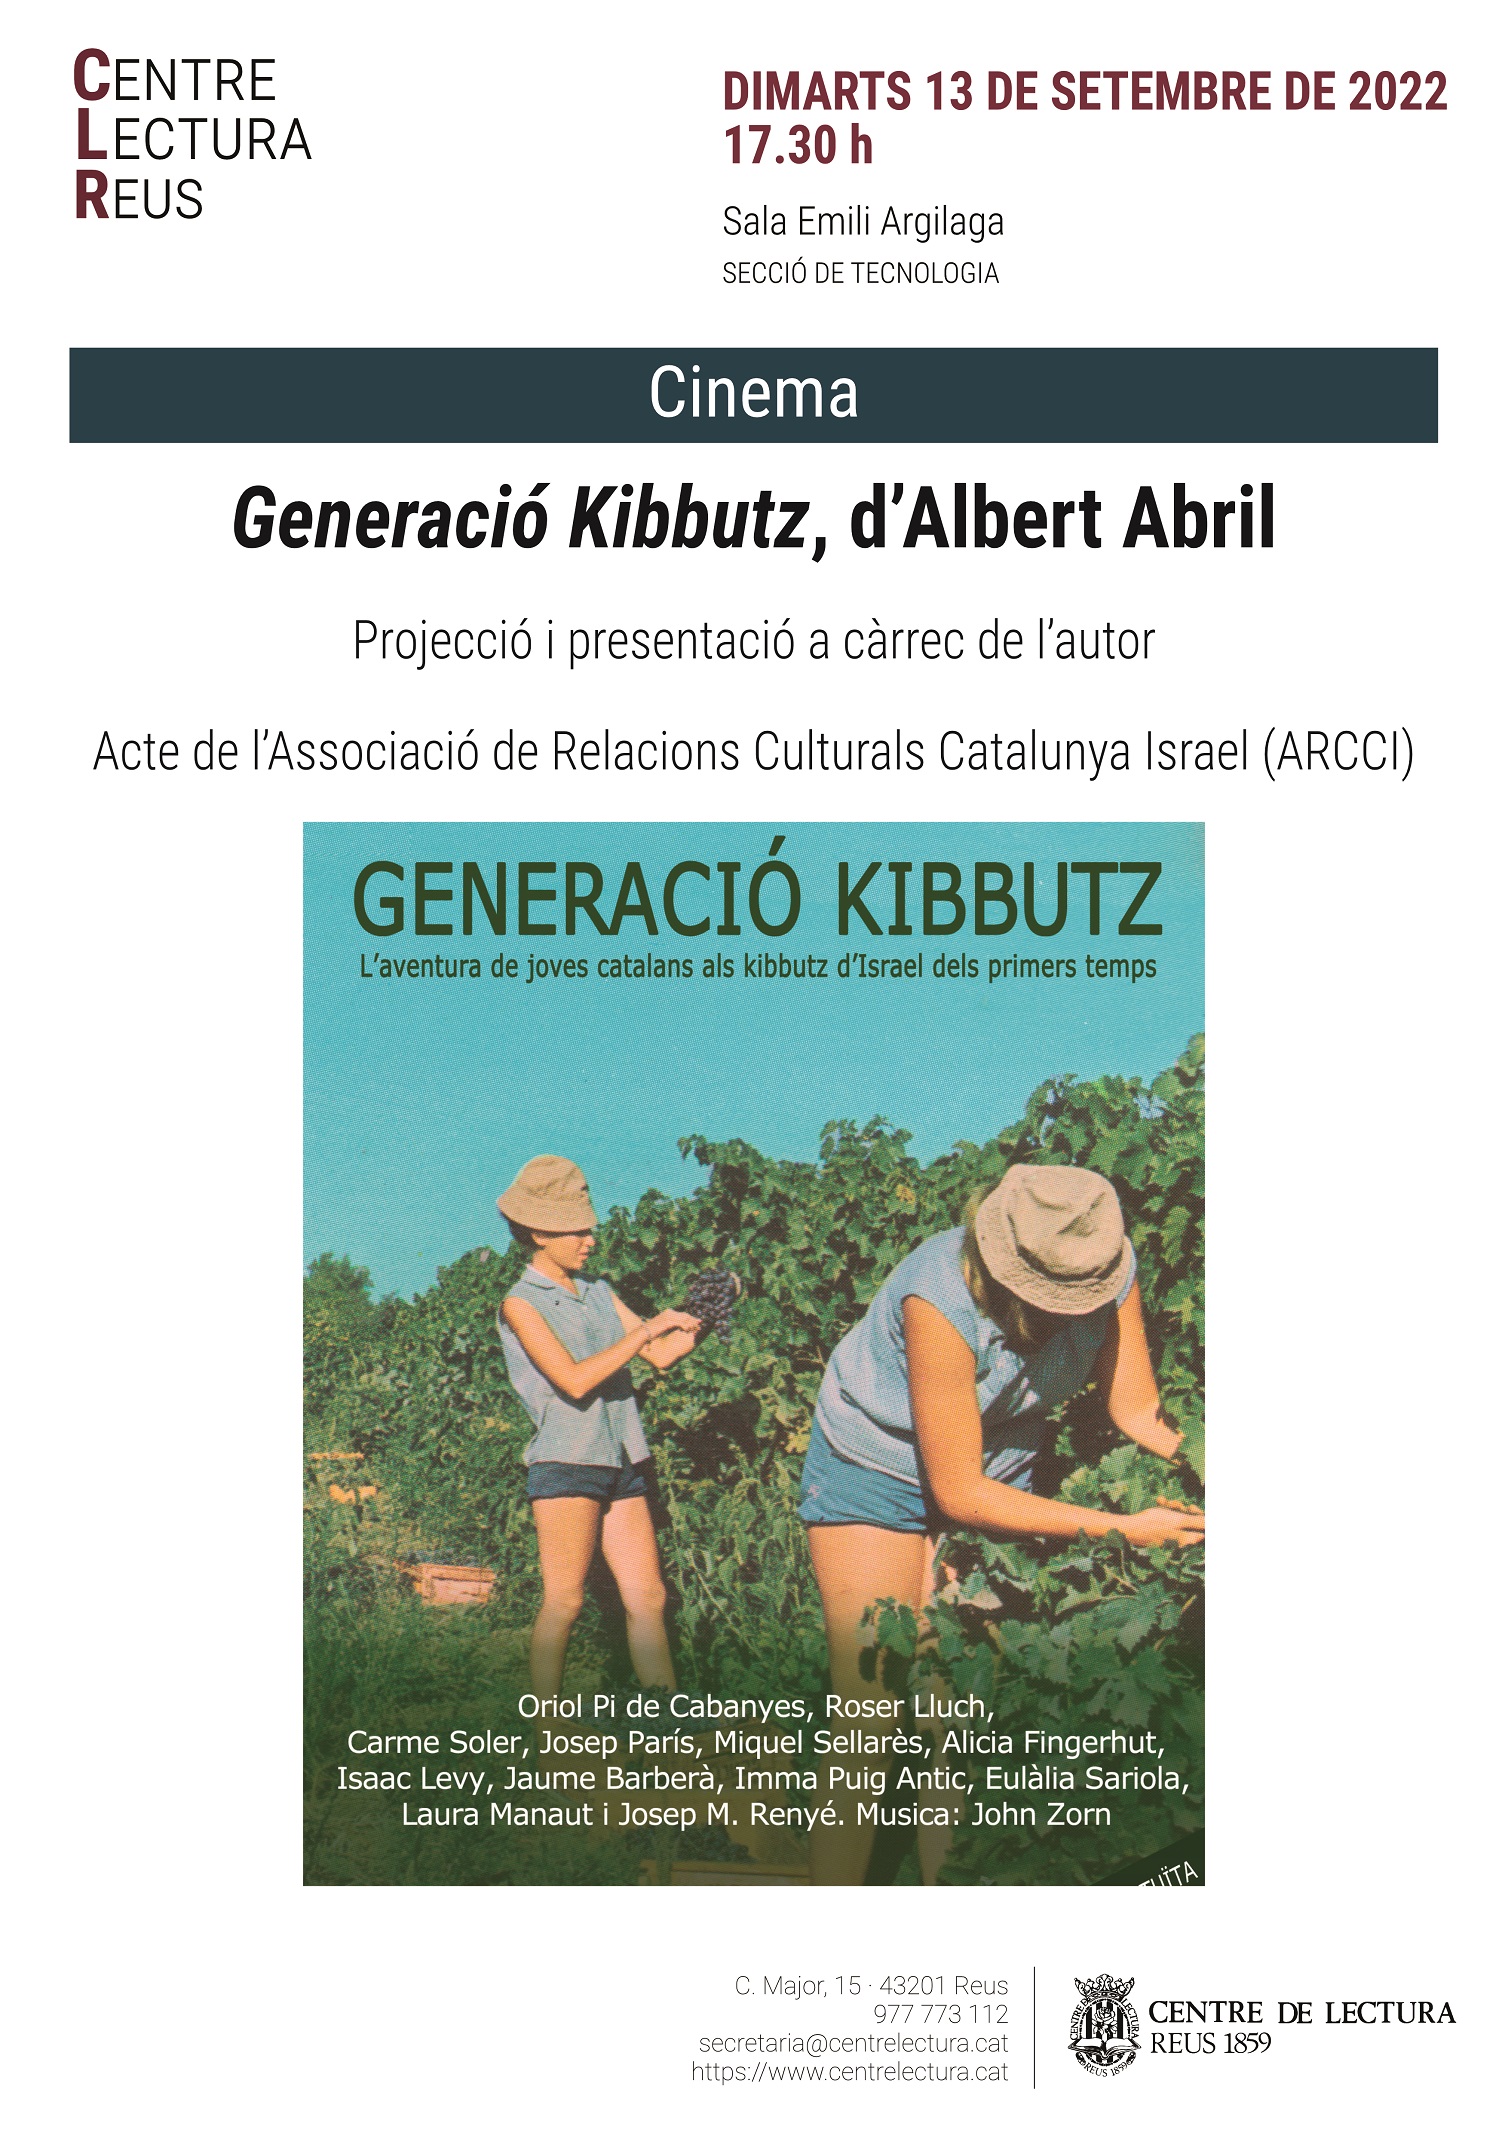 Generació Kibbutz